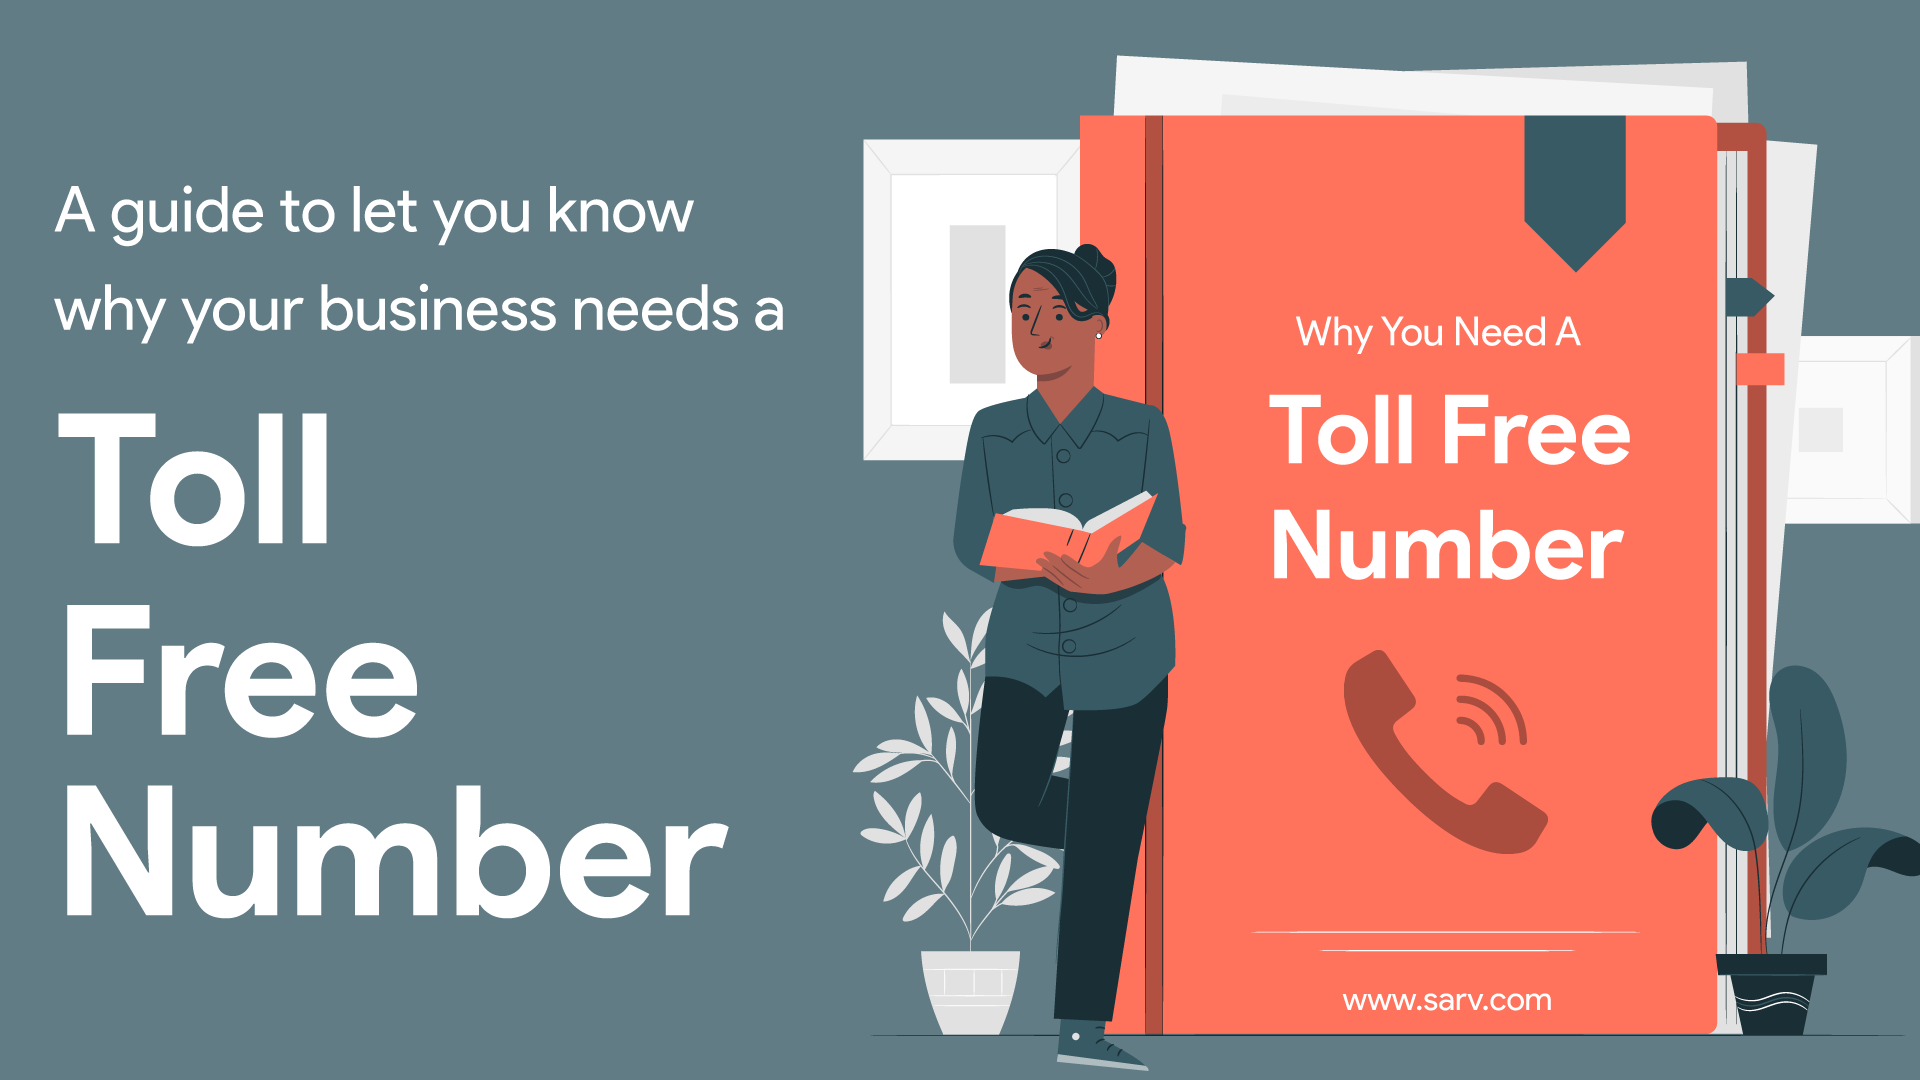 teamviewer toll free number